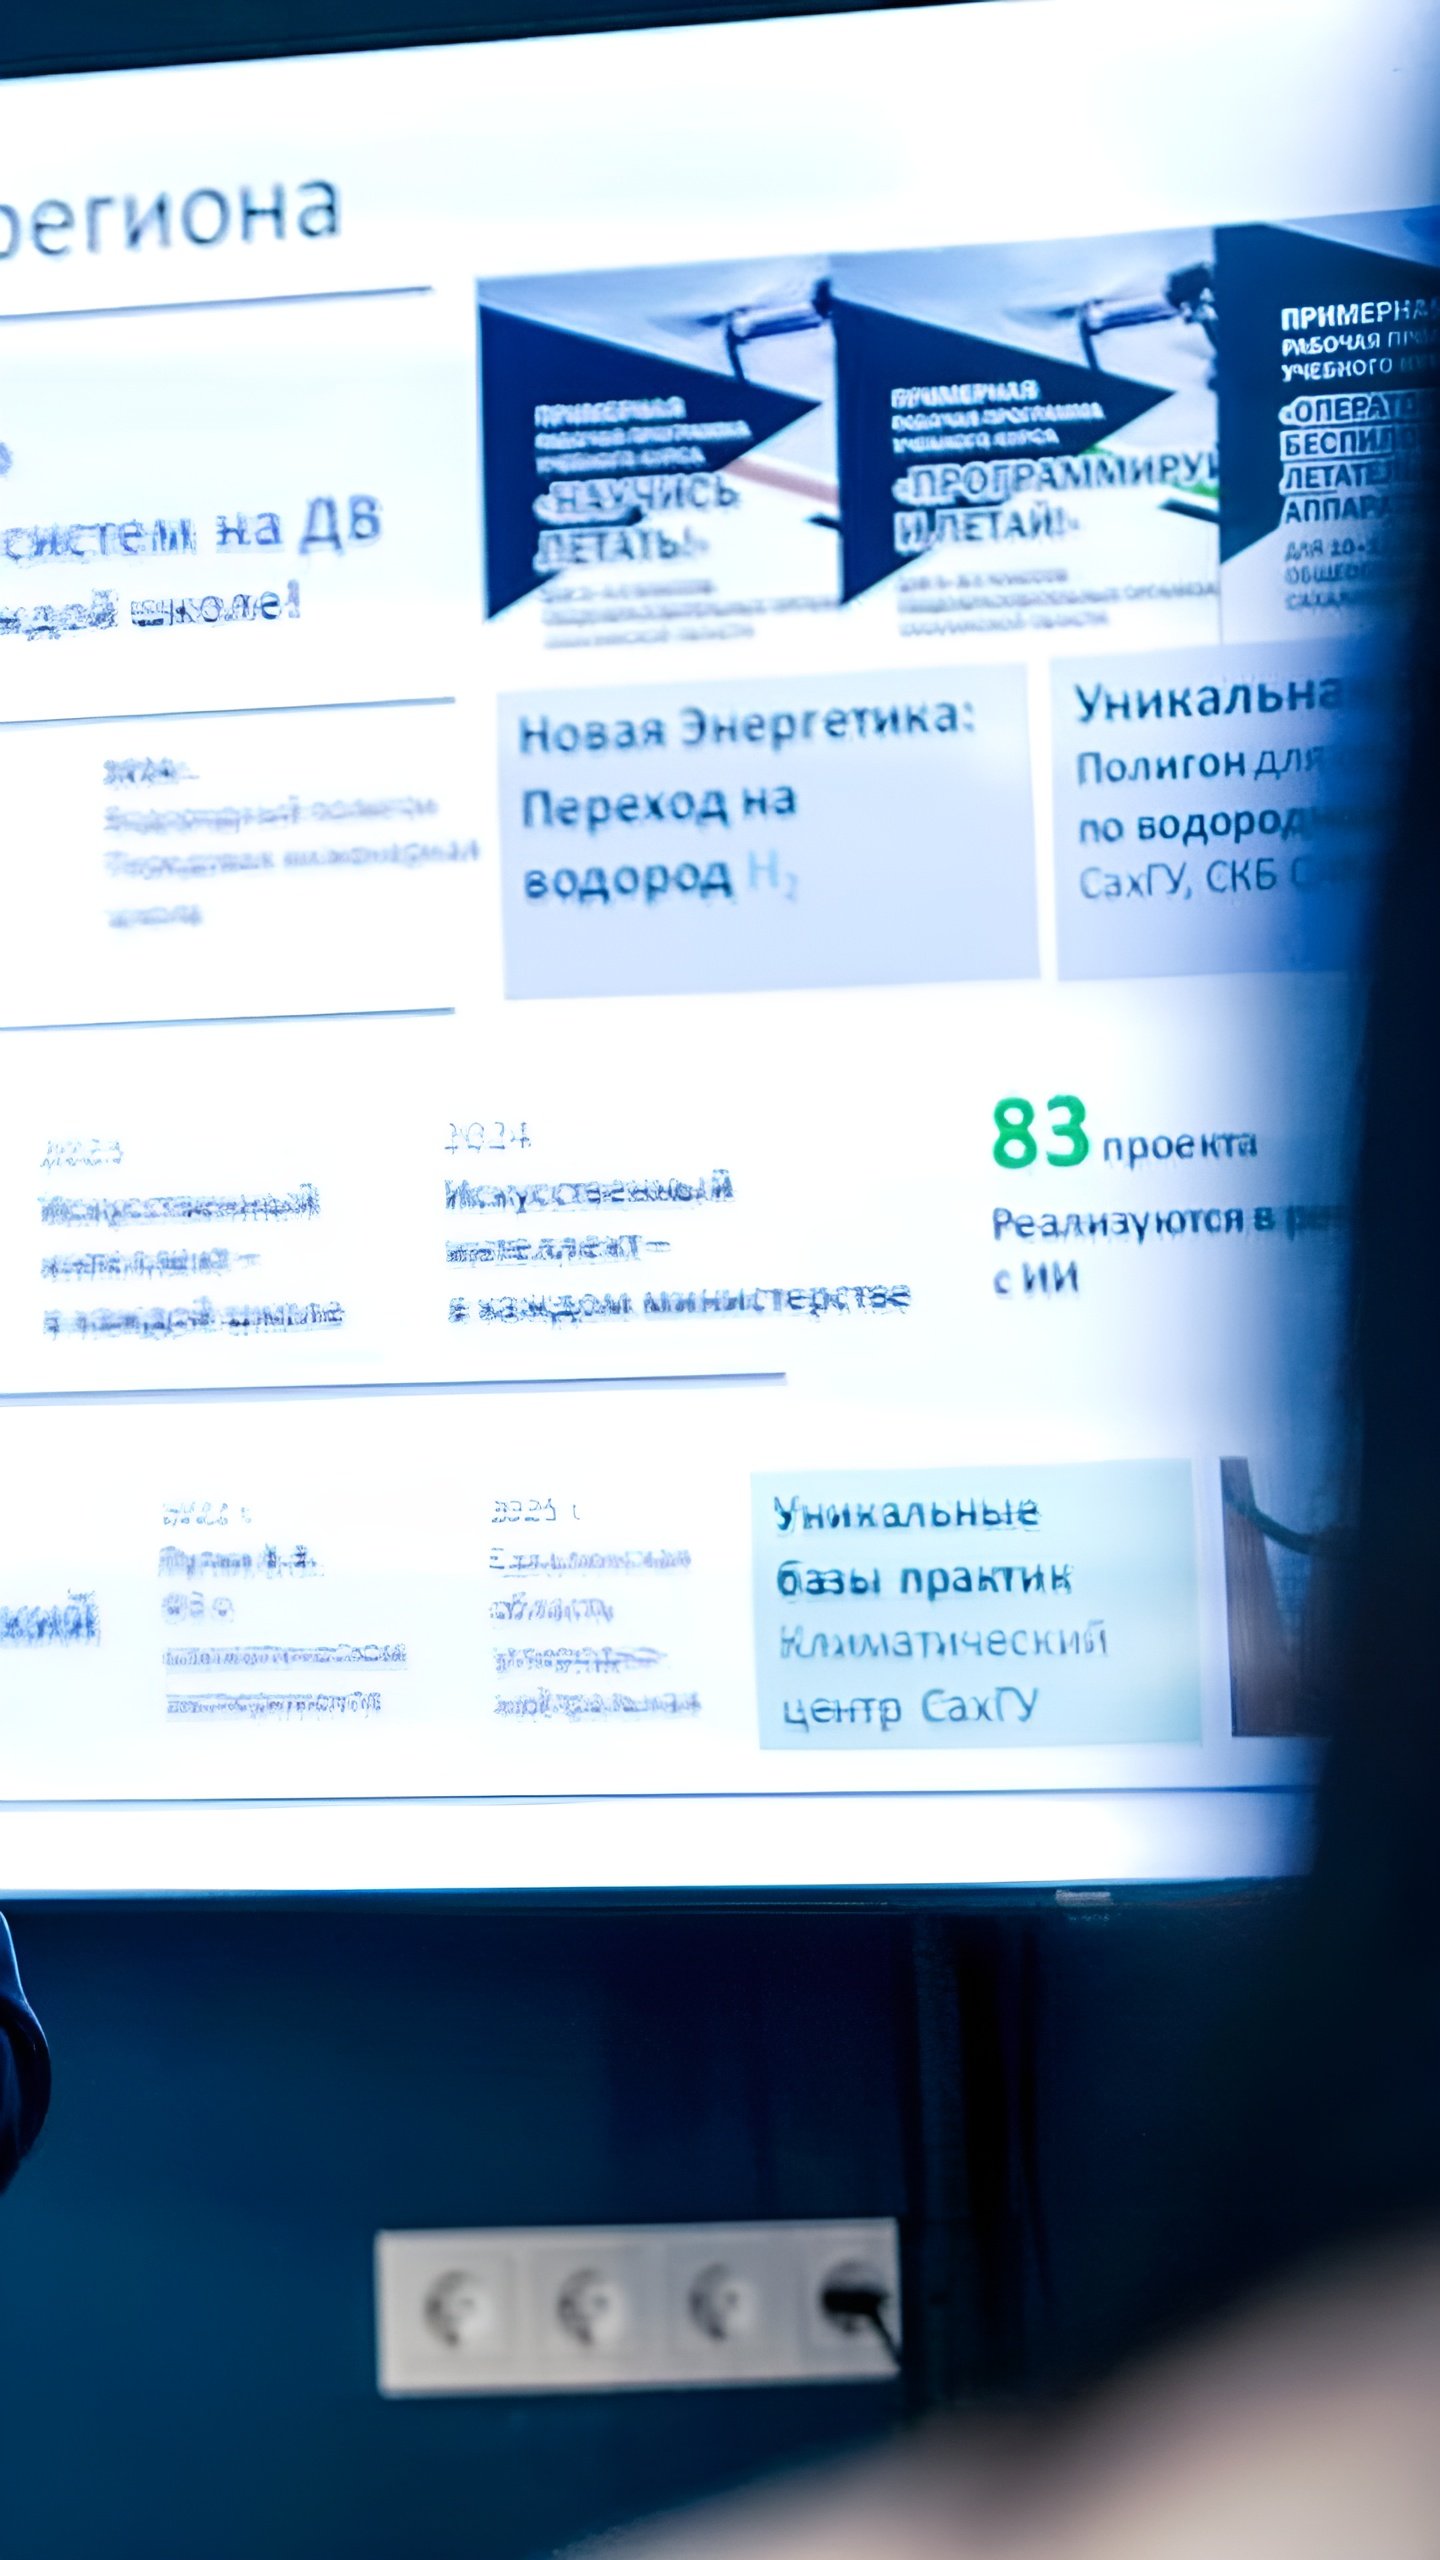 Дальневосточный МедиаСаммит 2.0: ключевая площадка для медиаиндустрии России